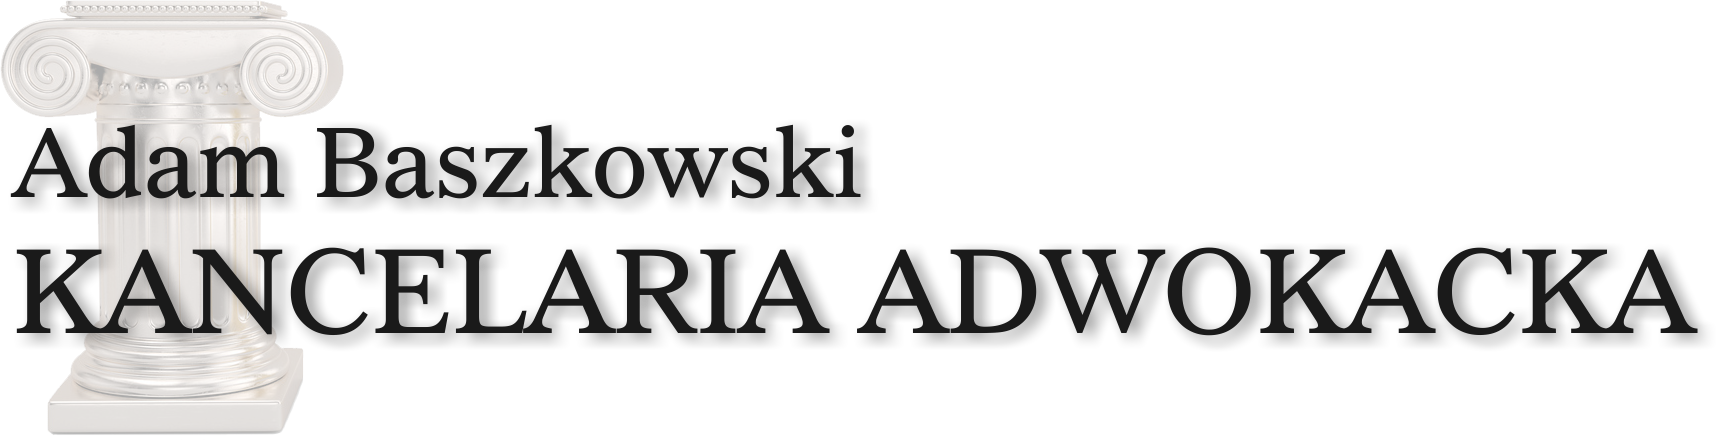 Kancelaria Adwokacka - Adam Baszkowski